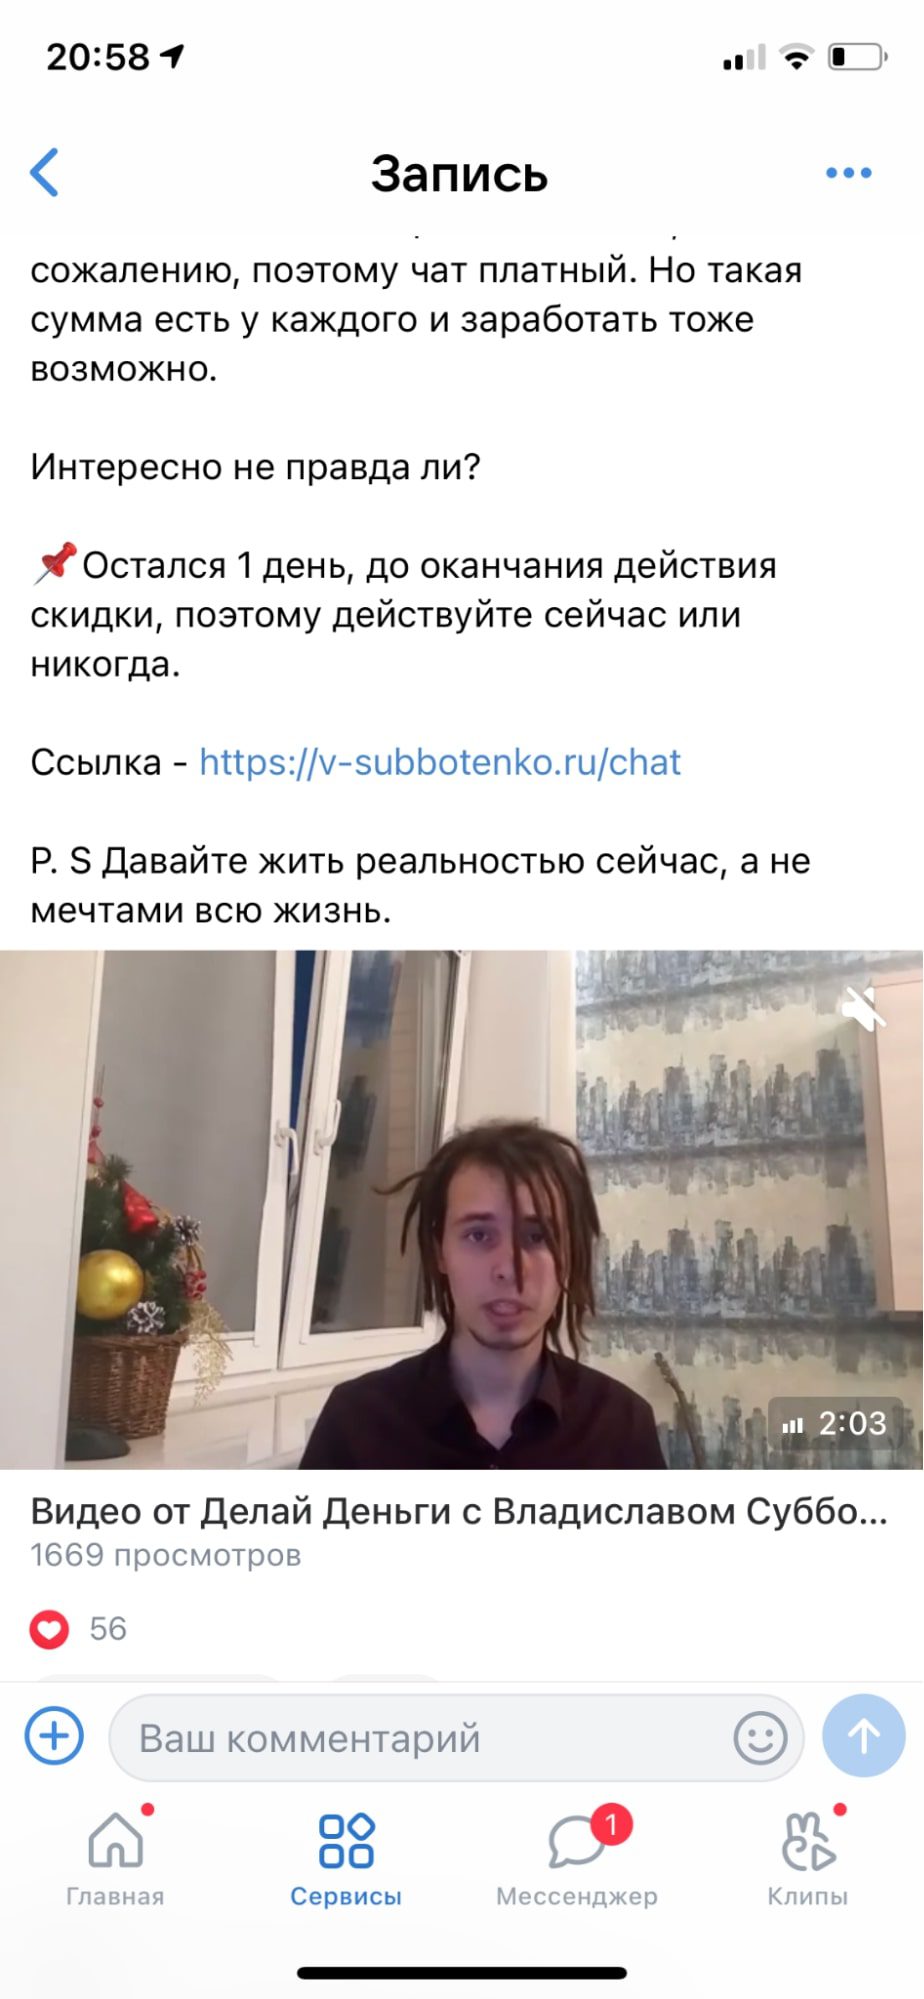 Видео отзыв об обучении от Владислава Субботенко